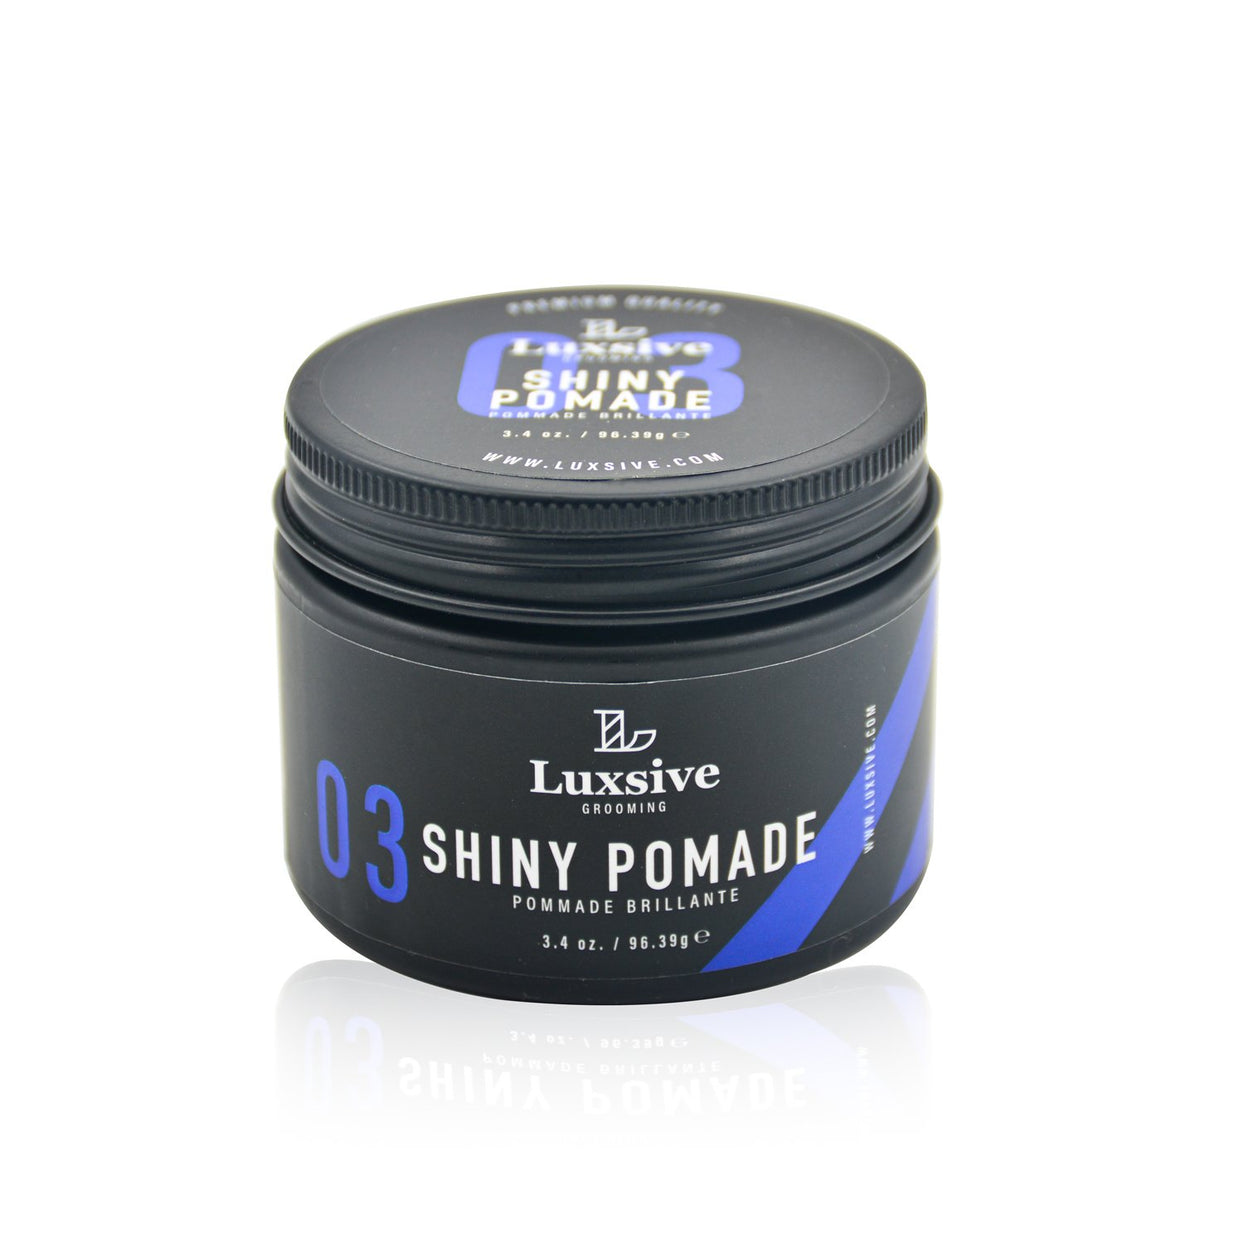 Shiny Pomade 3.4 oz. (96.39 g) - Luxsive.com